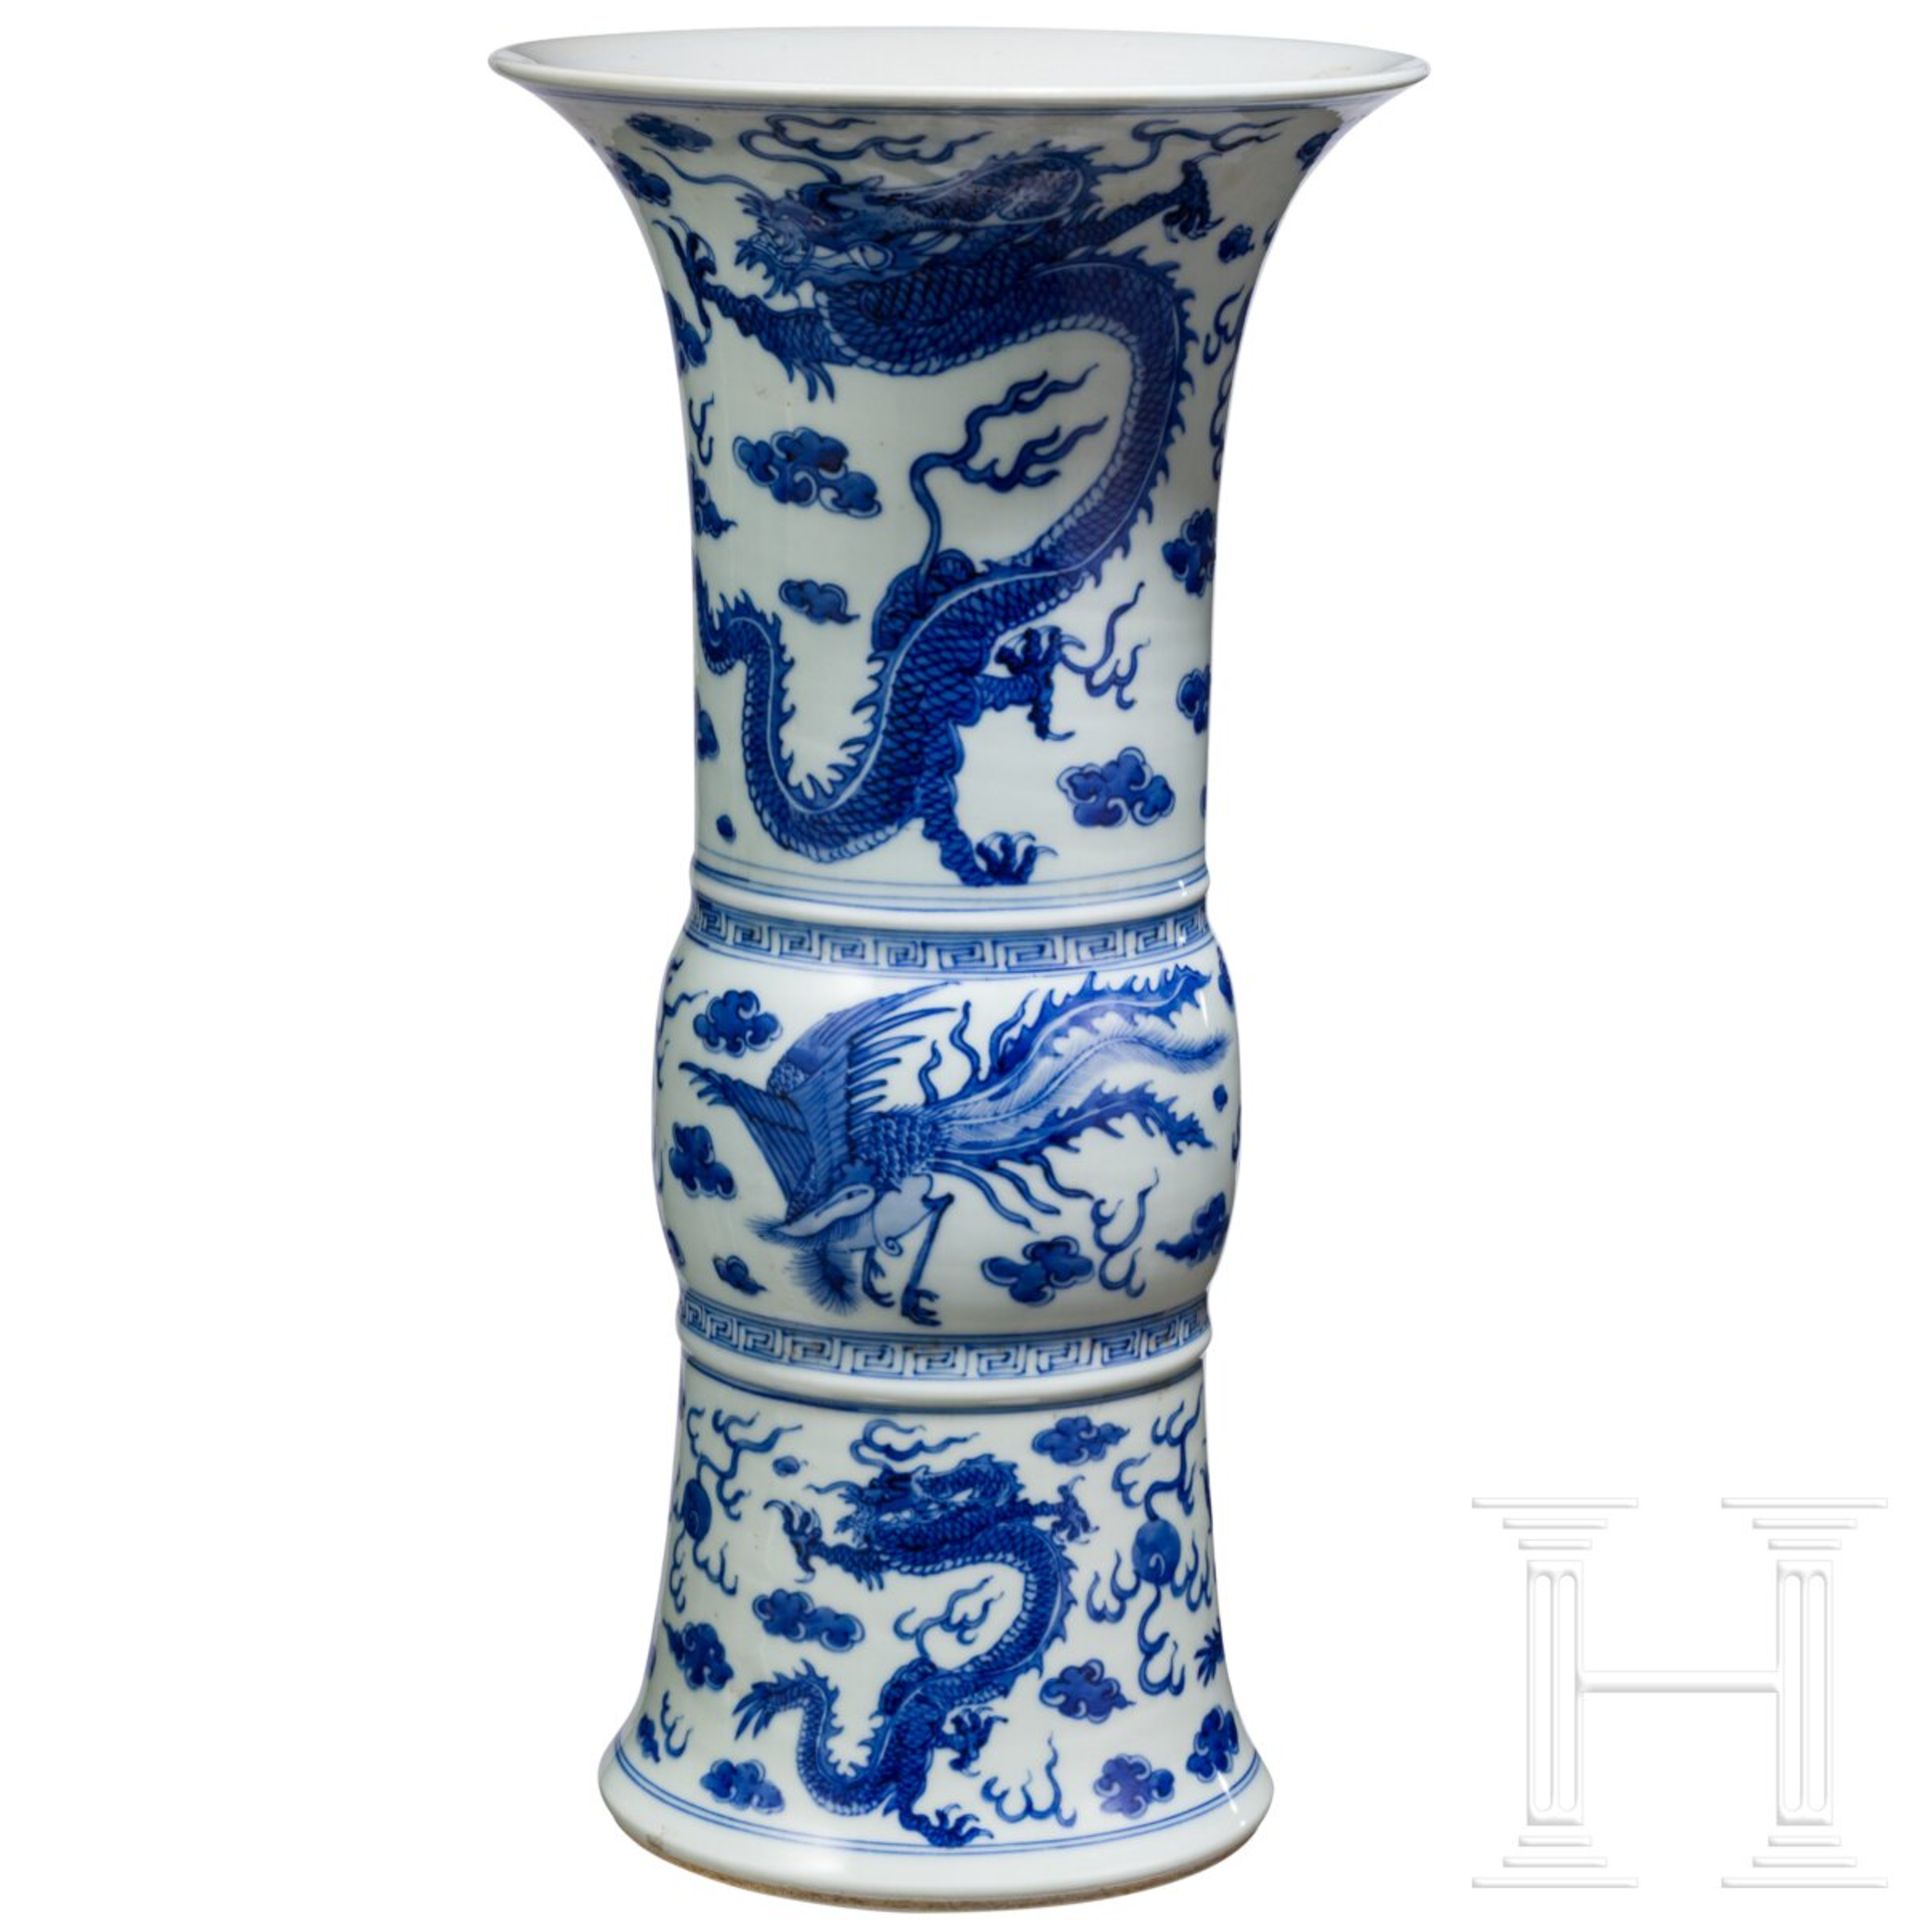 Große blau-weiße Gu-Vase mit Phönixen und Drachen, China, wohl Kangxi-Periode (Anfang 18. Jhdt.) - Bild 2 aus 9